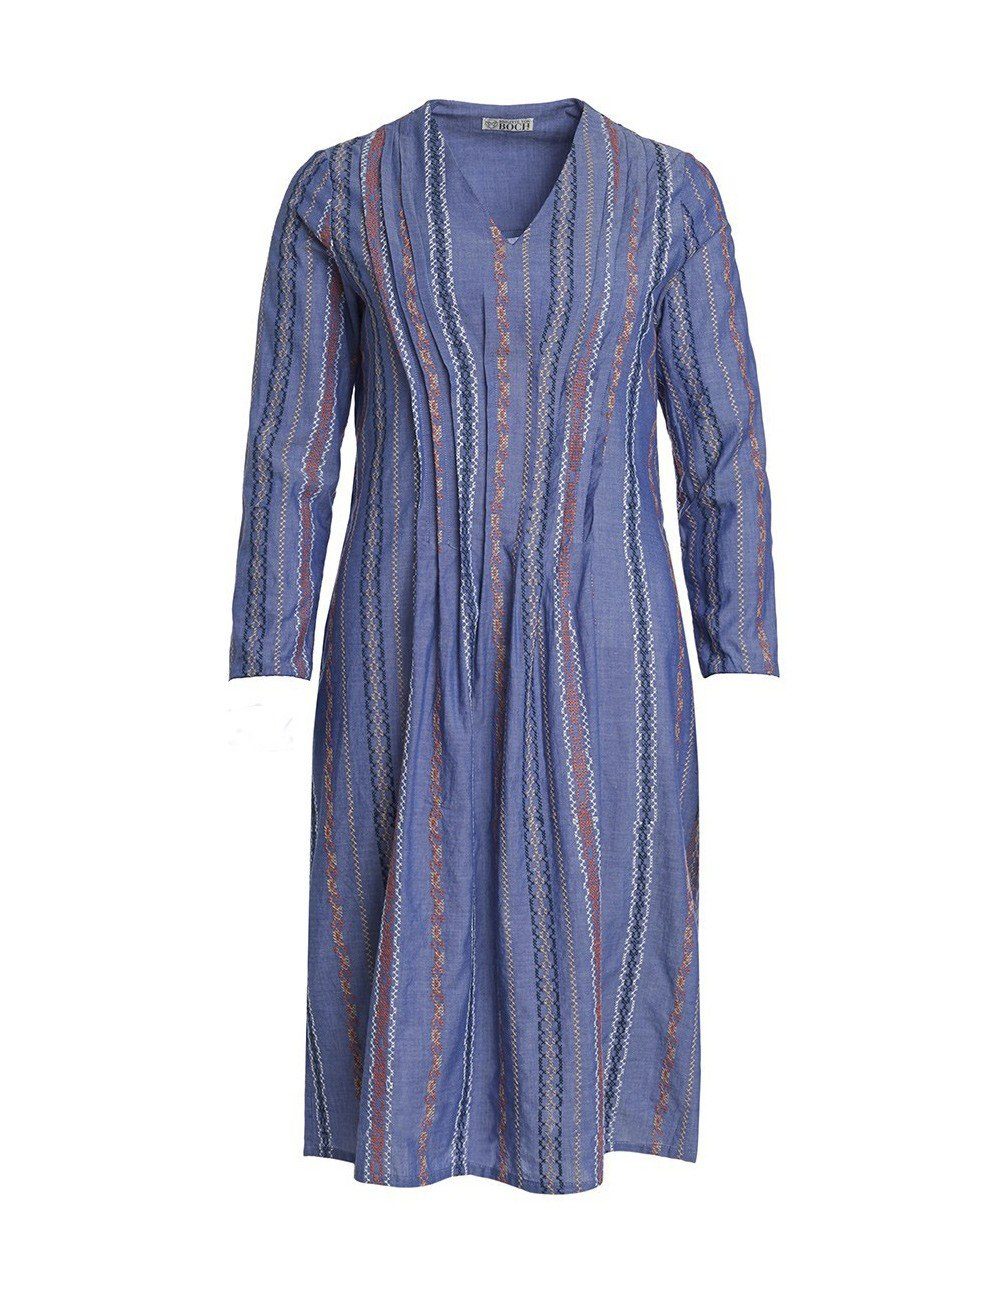 Brigitte von Boch Sommerkleid Marnie Kleid blau